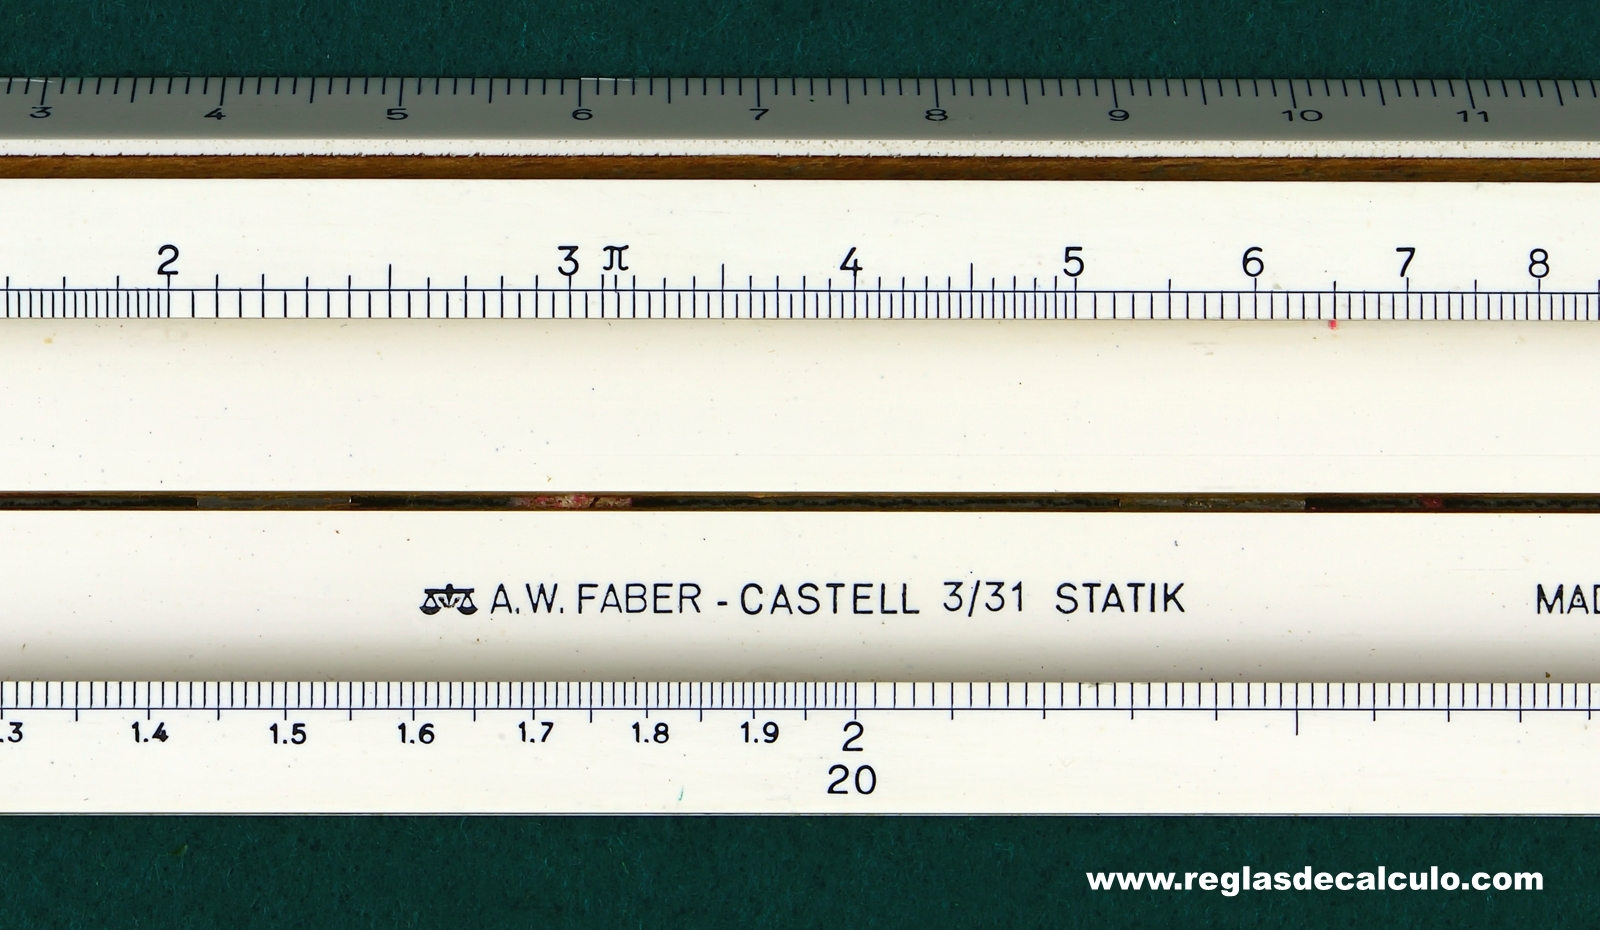 Regla de Calculo Slide rule Faber Castell 3/31